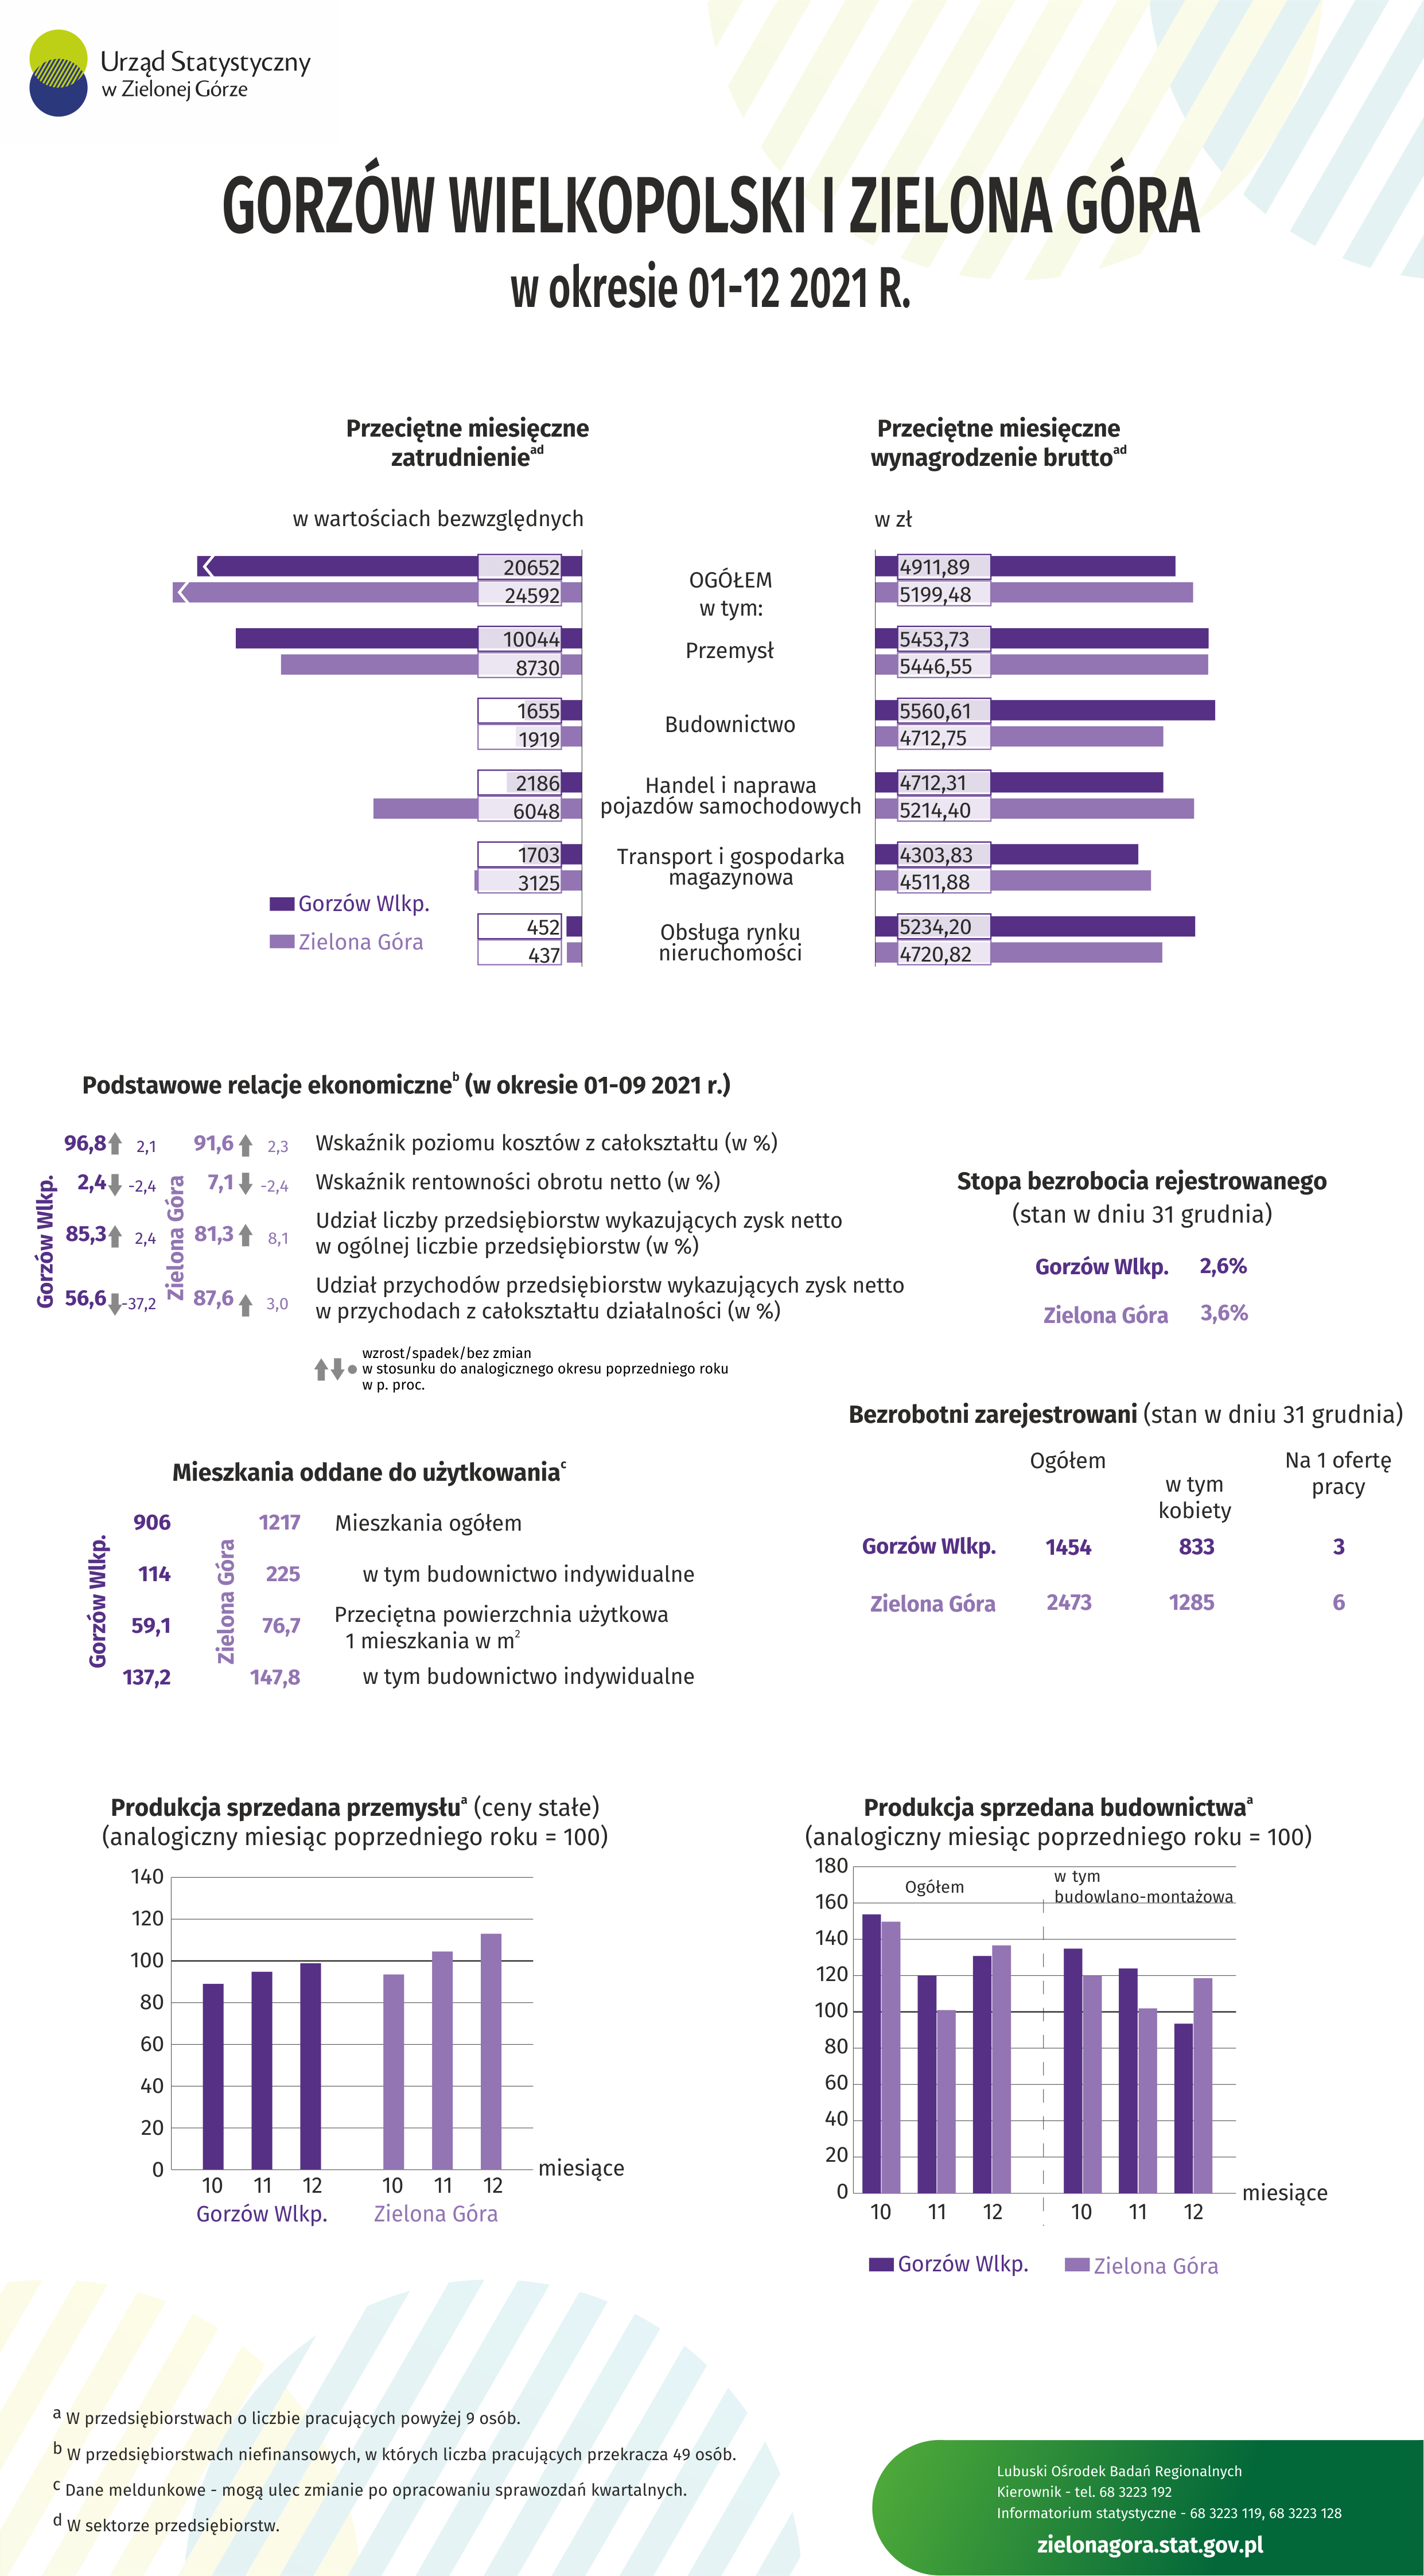 Infografika z wybranymi dabnymi dla miast Gorzów Wielkopolski i Zielona Góra w okresie styczeń-grudzień 2021 roku.